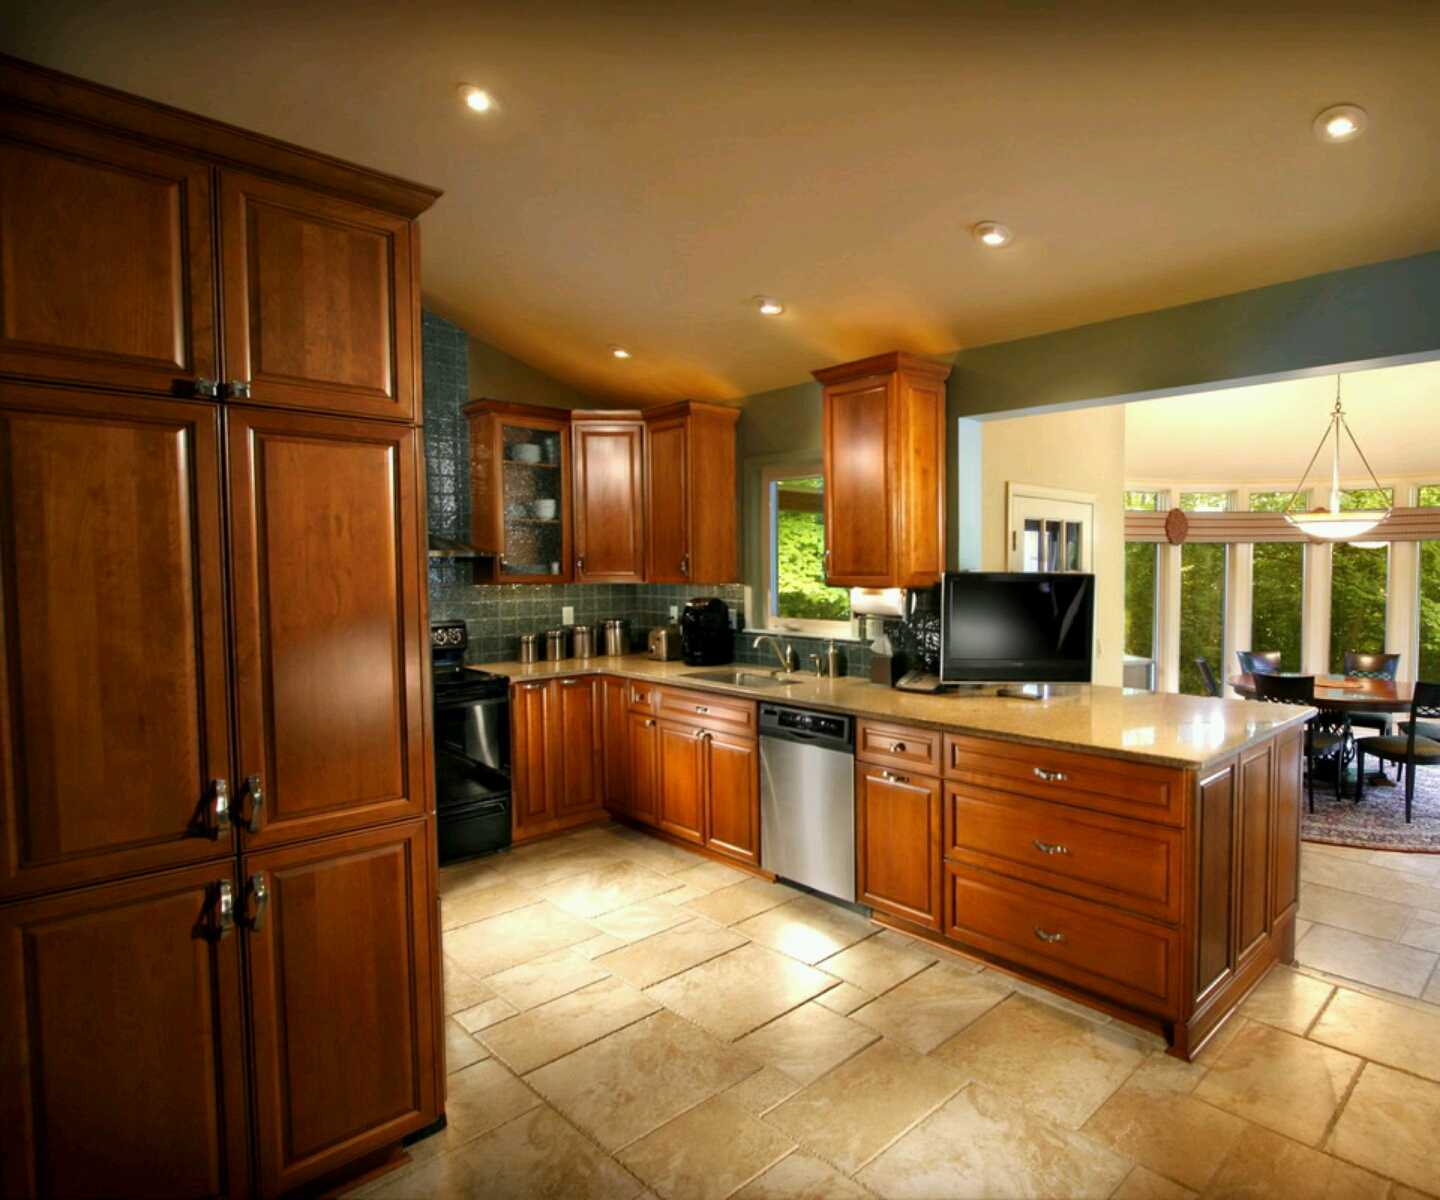  Luxury Kitchen Cabinets Info